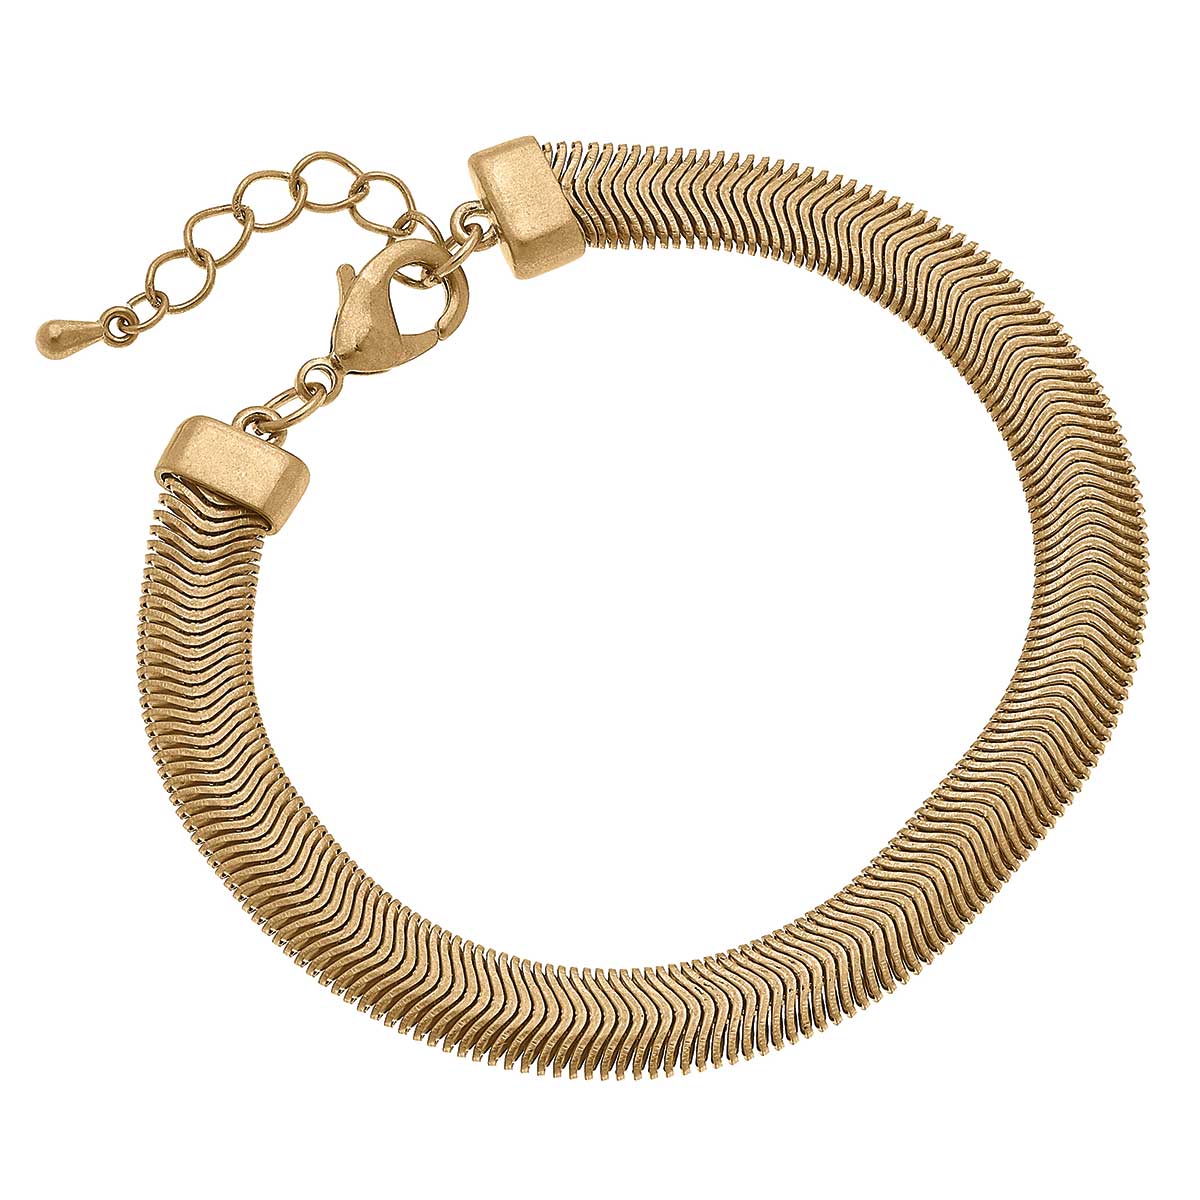 Marie Liquid Chain Bracelet in Worn Gold